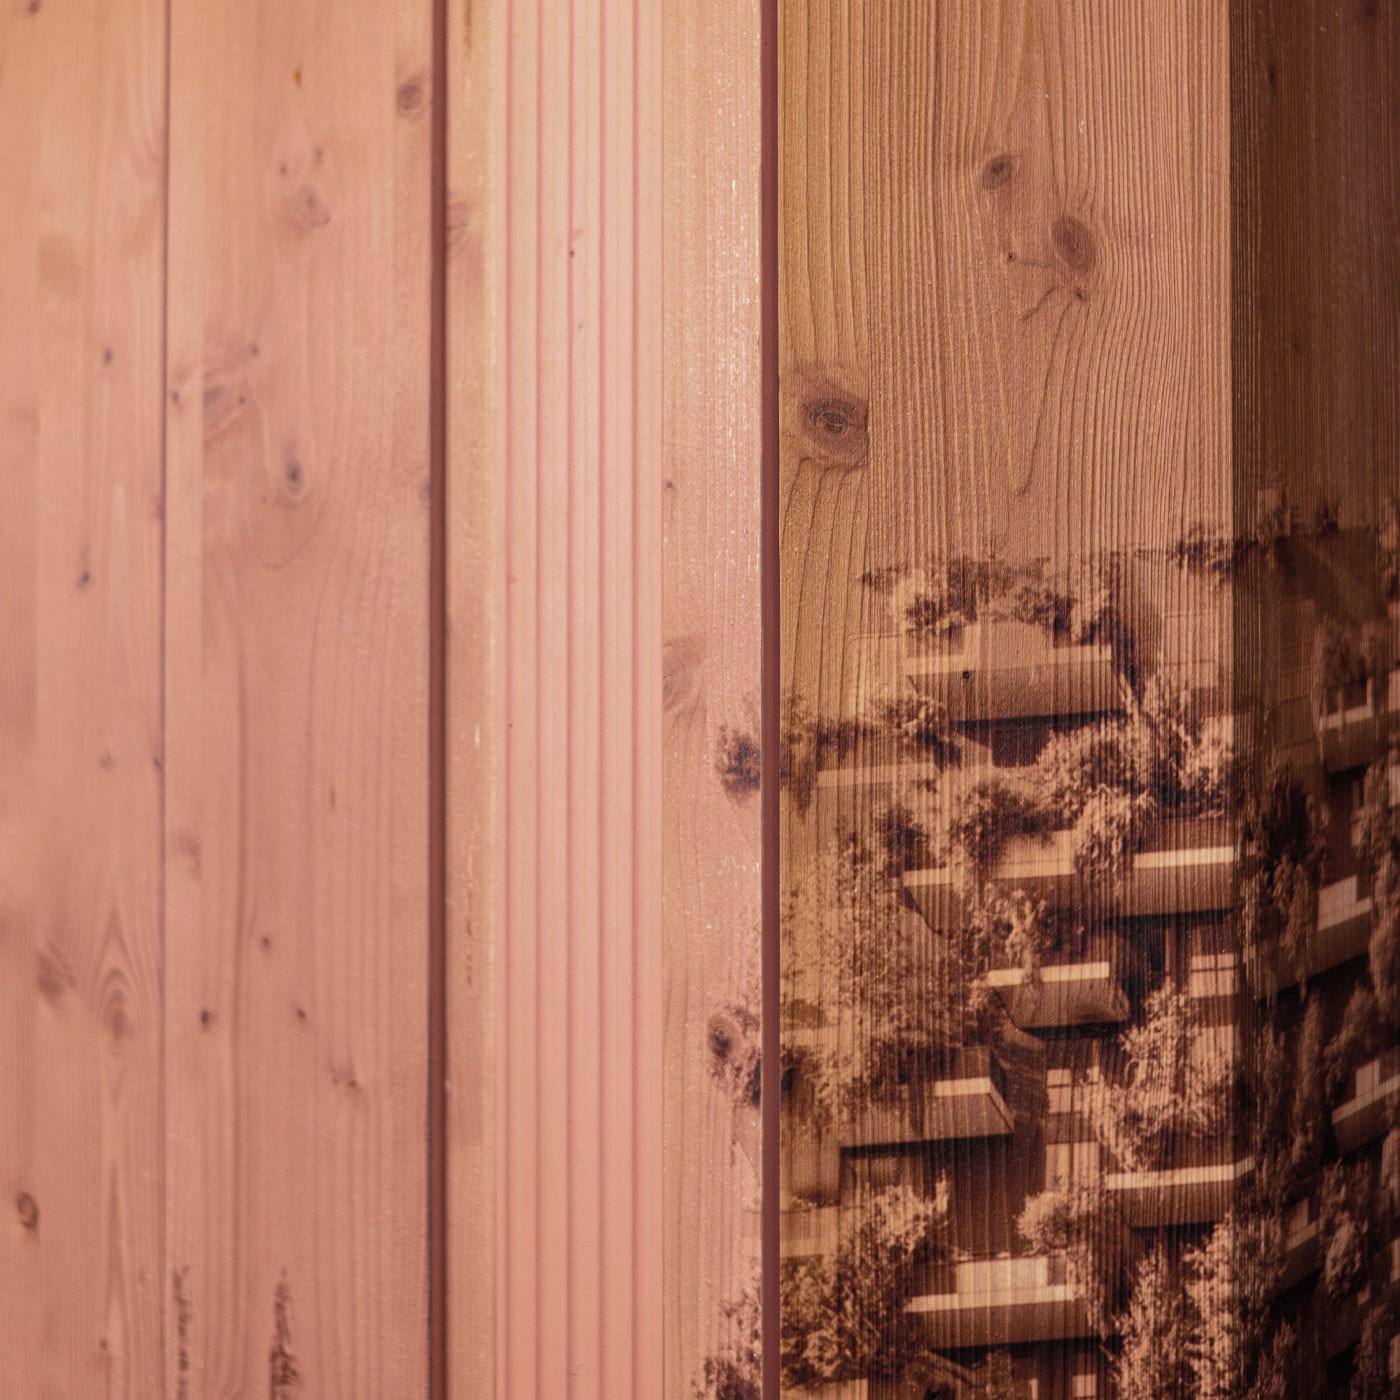 Une séparation de pièce en bois peint dont la face extérieure, apparemment solide, s'ouvre en persiennes par simple pression, disparaissant presque. Chaque panneau a deux faces : la principale contient une partie de la vue urbaine, tandis que le